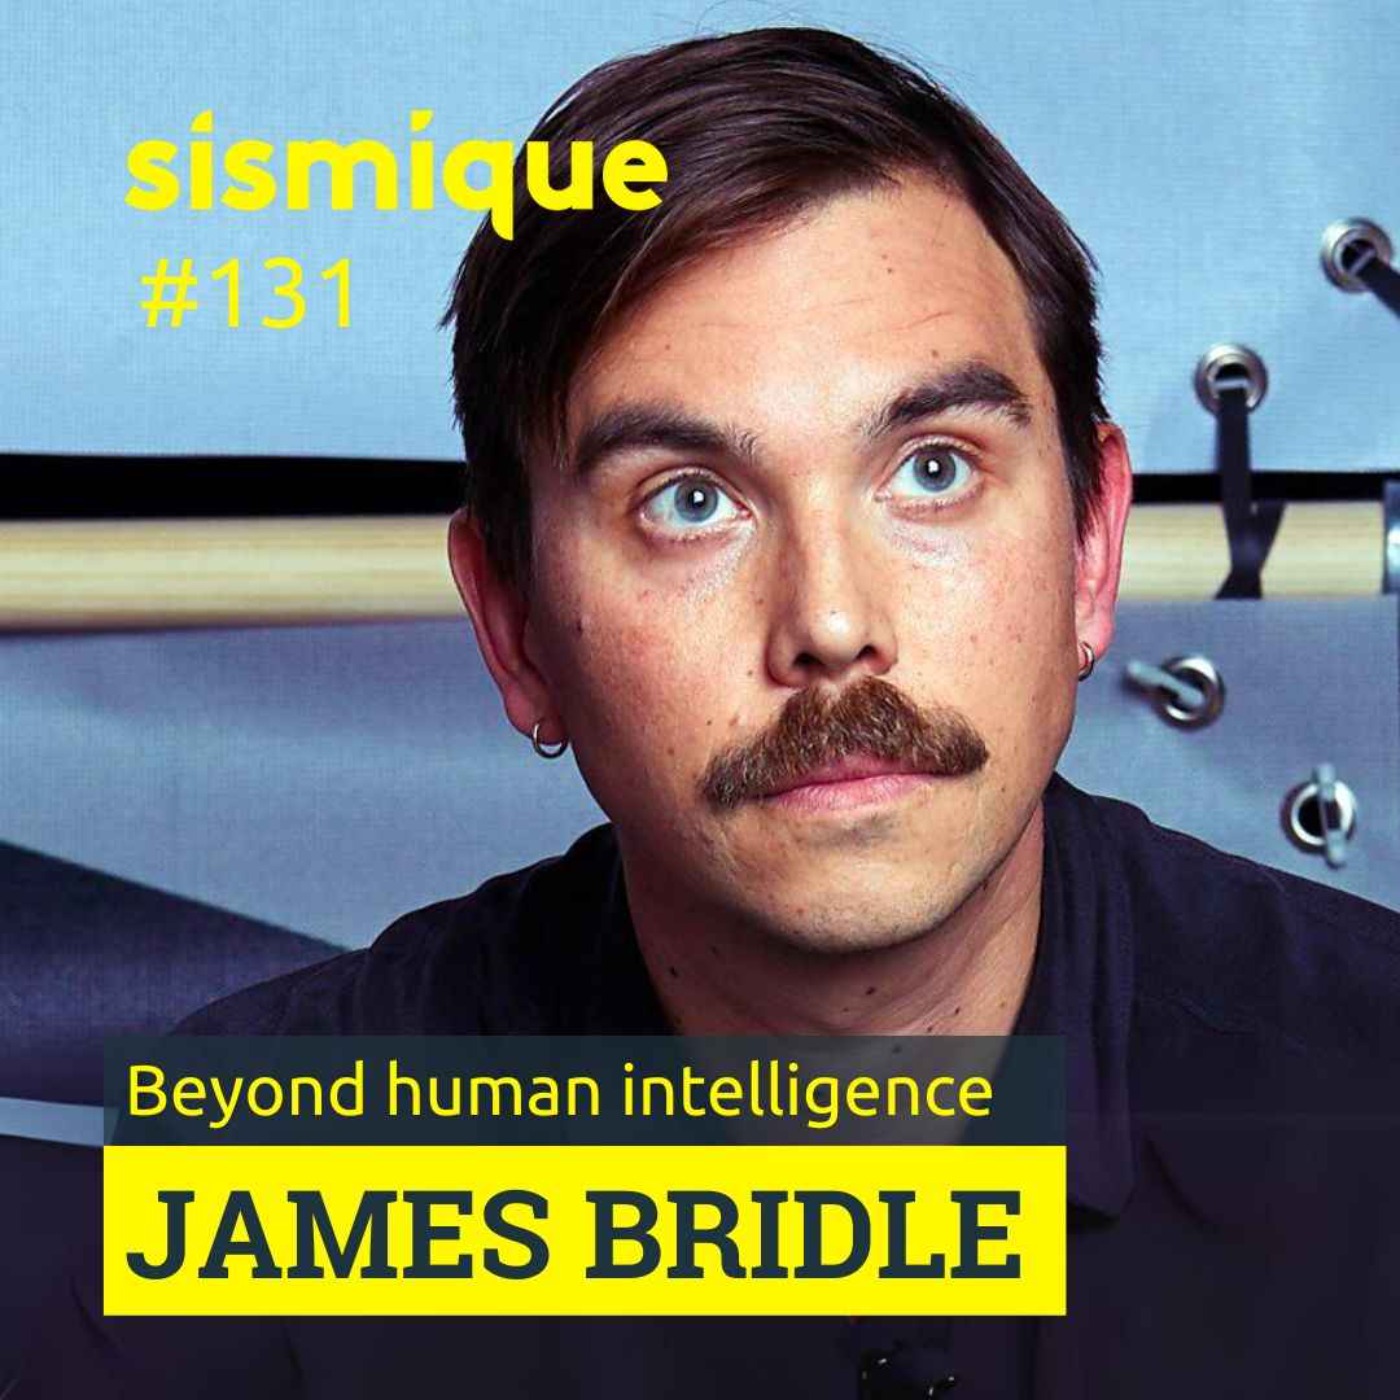 131. 🇬🇧 Au-delà de l’intelligence humaine - JAMES BRIDLE